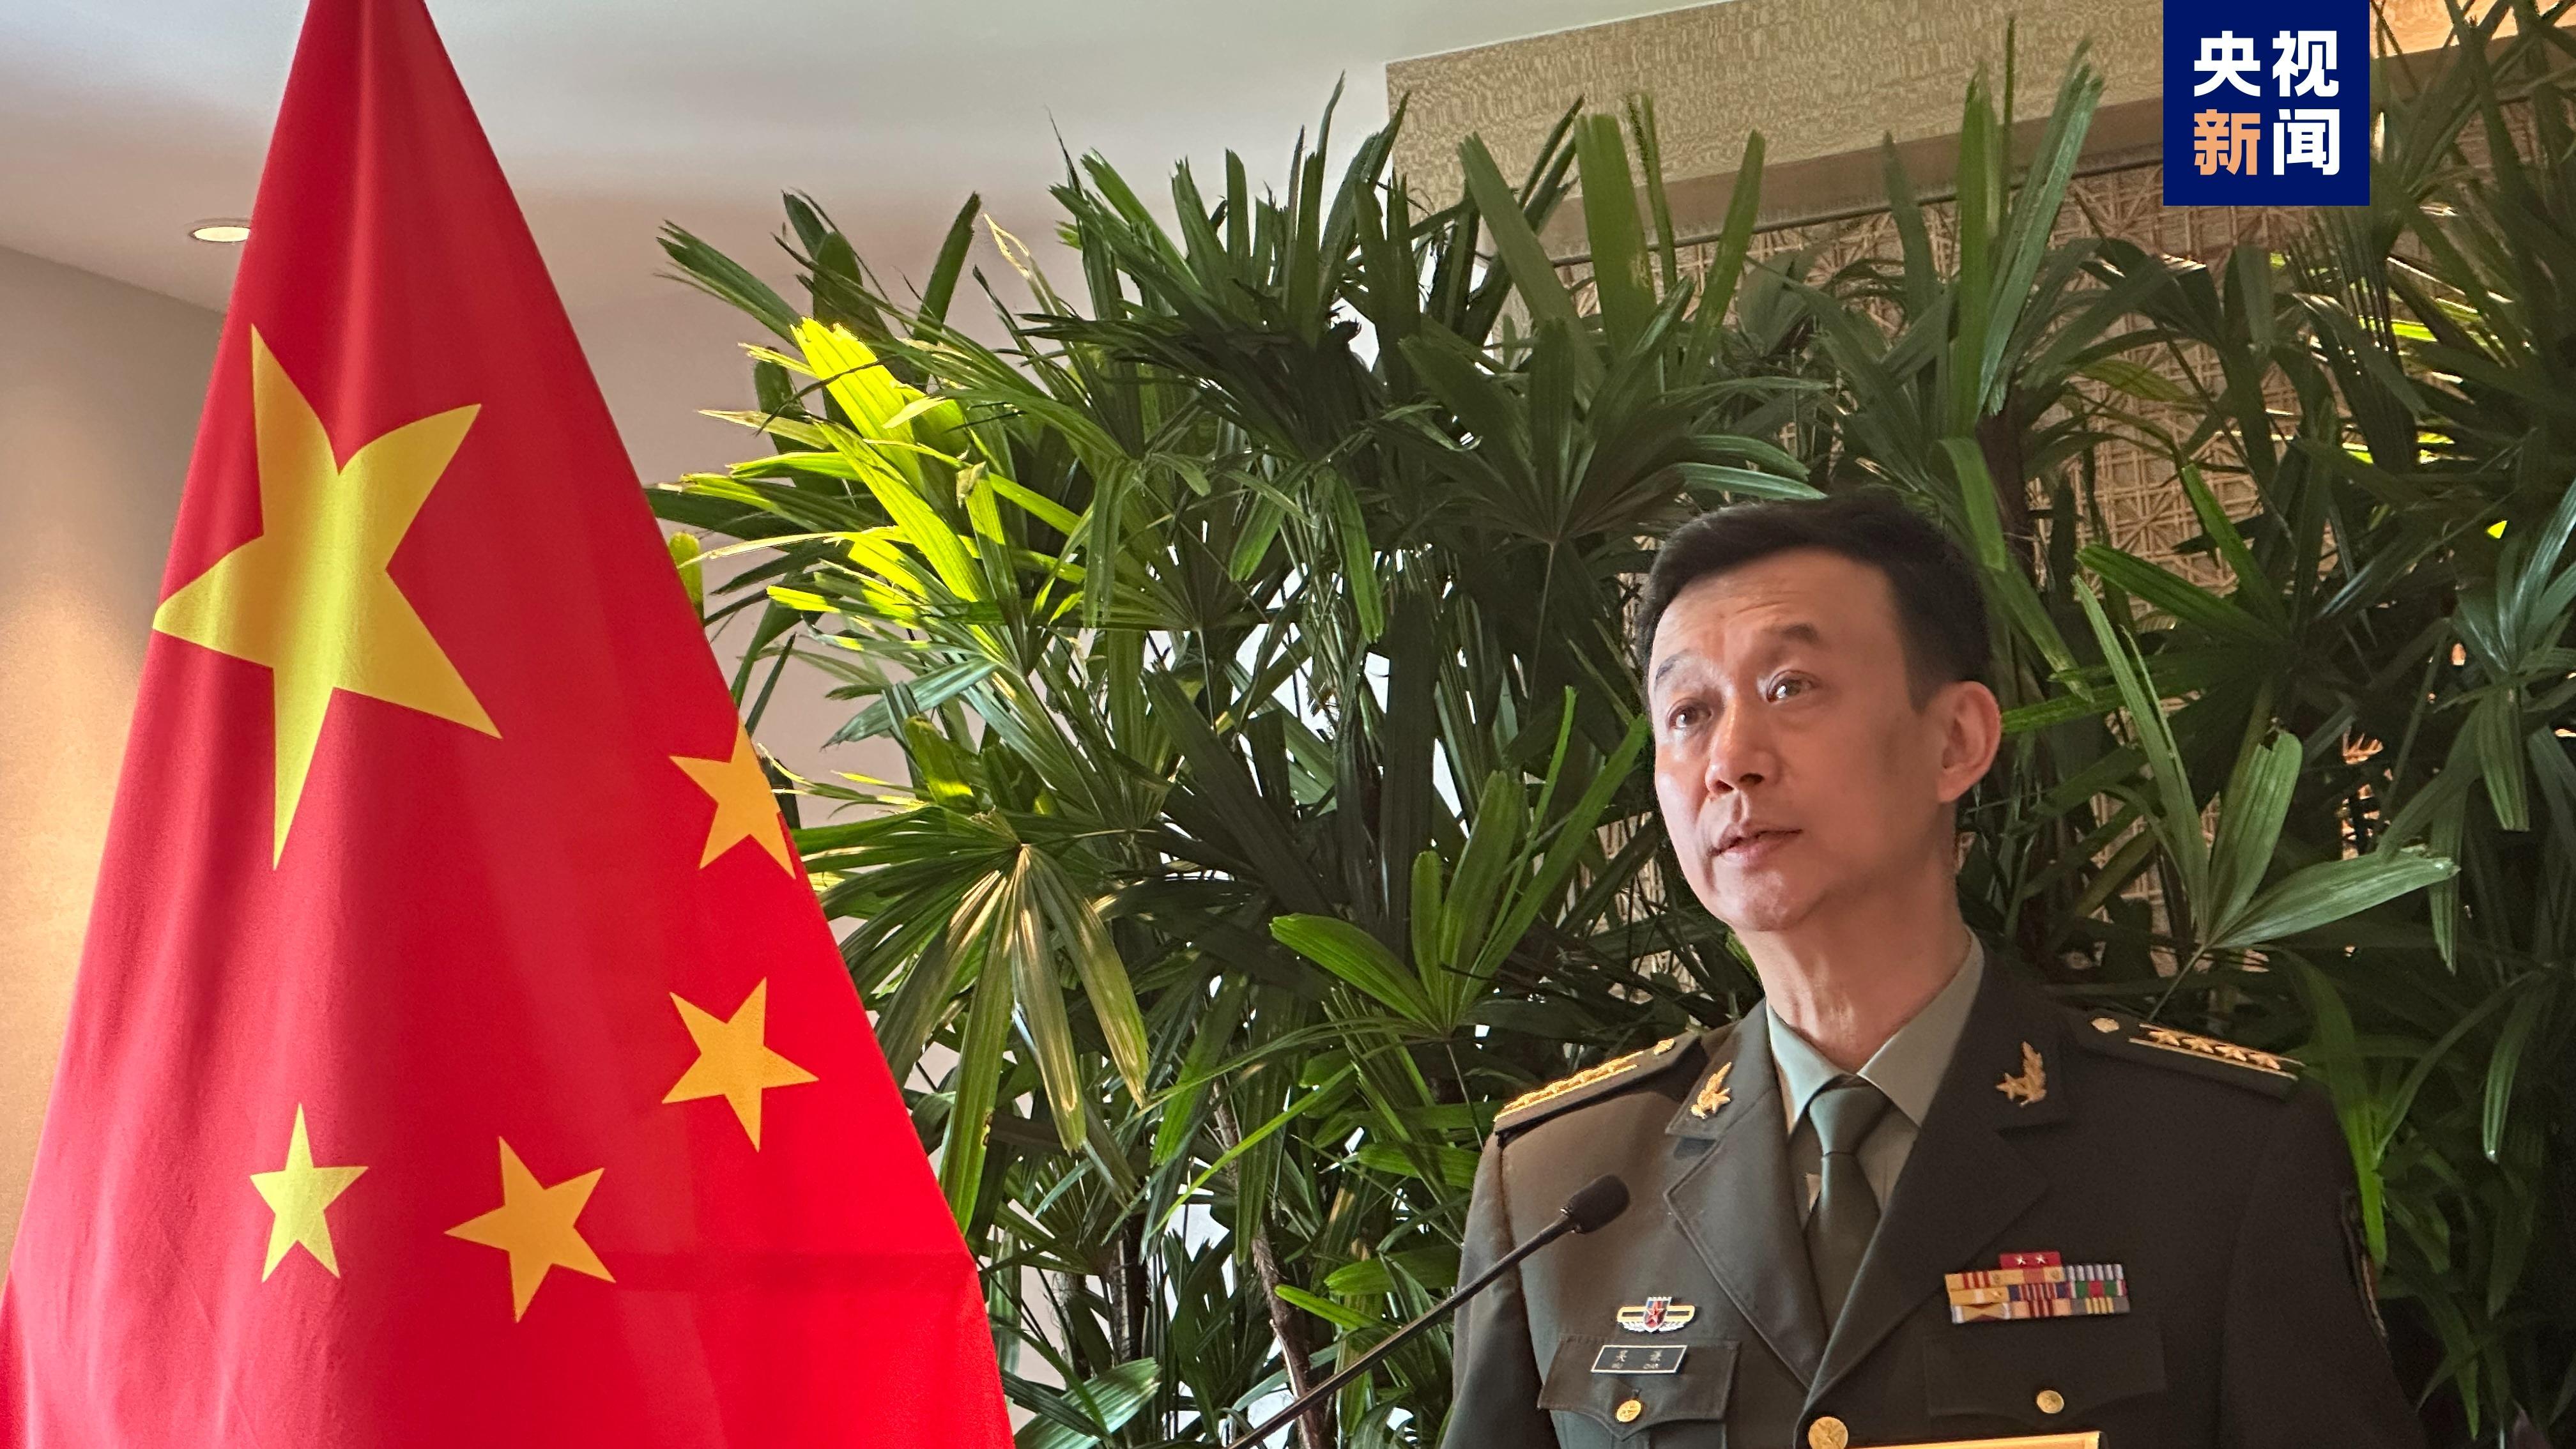 चीन र अमेरिकाका रक्षामन्त्रीबीच विचार आदानप्रदान